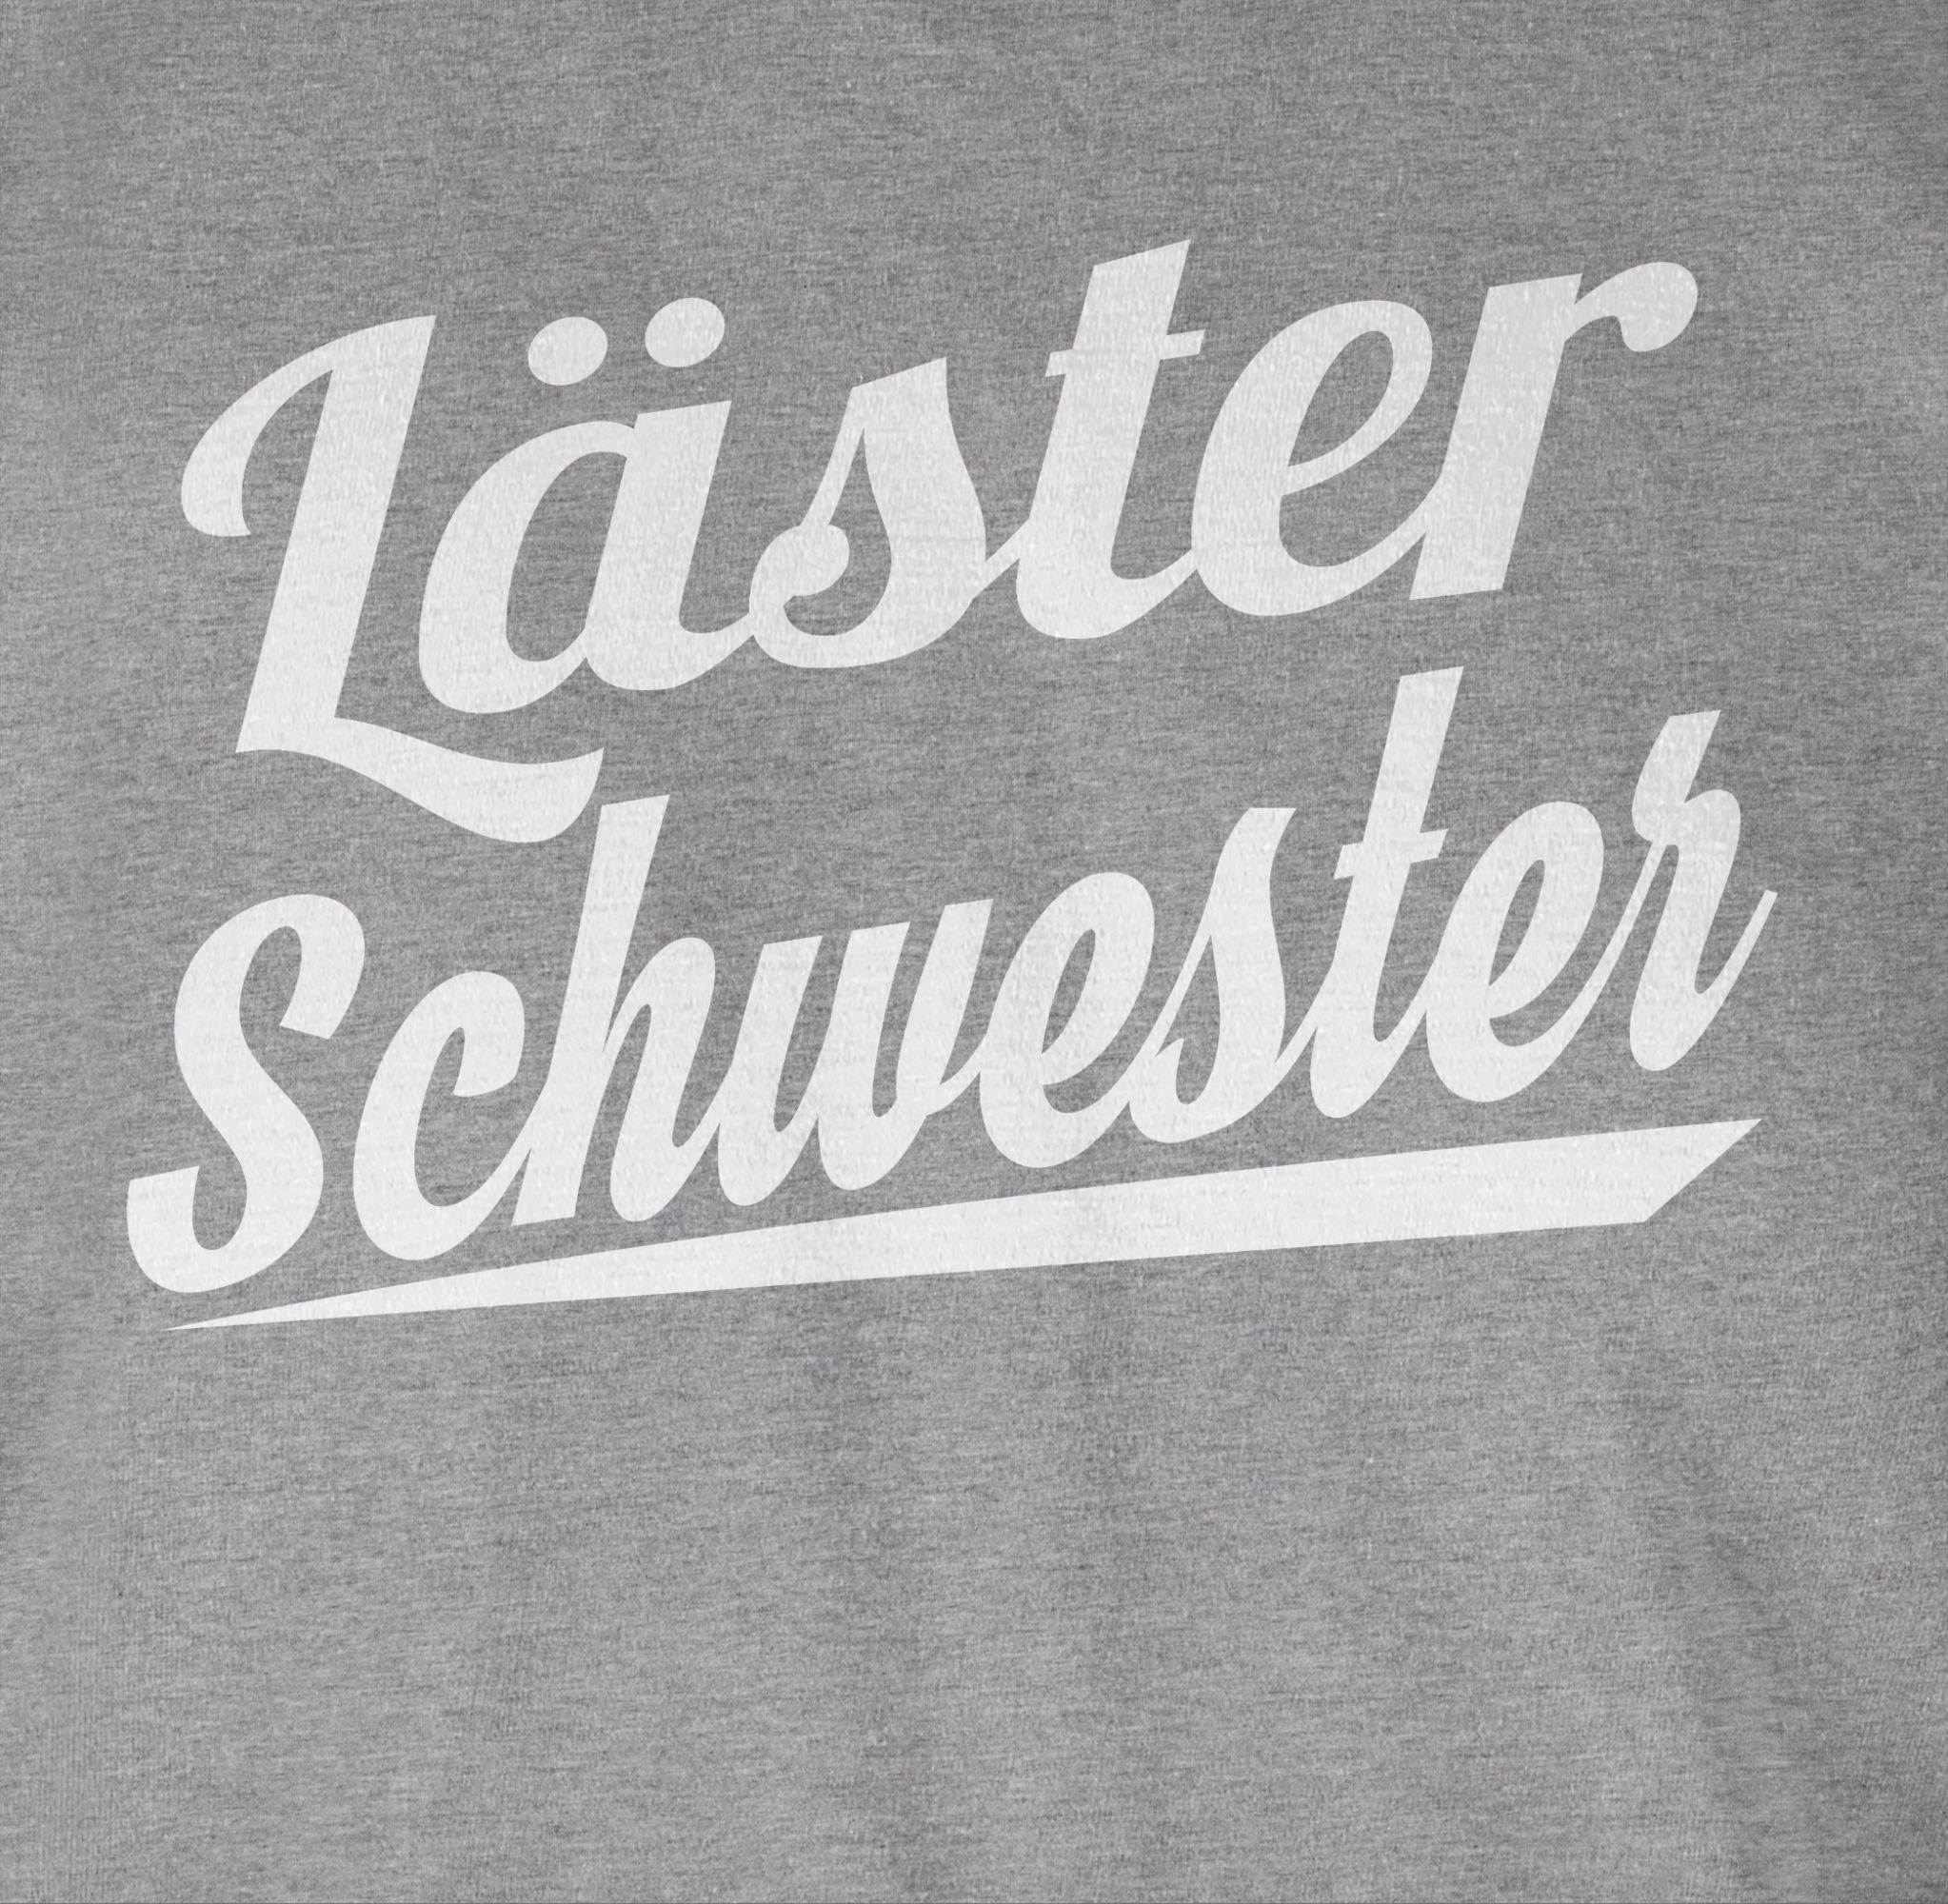 Sprüche T-Shirt Statement Schwester - 02 Shirtracer Grau Läster meliert weiß